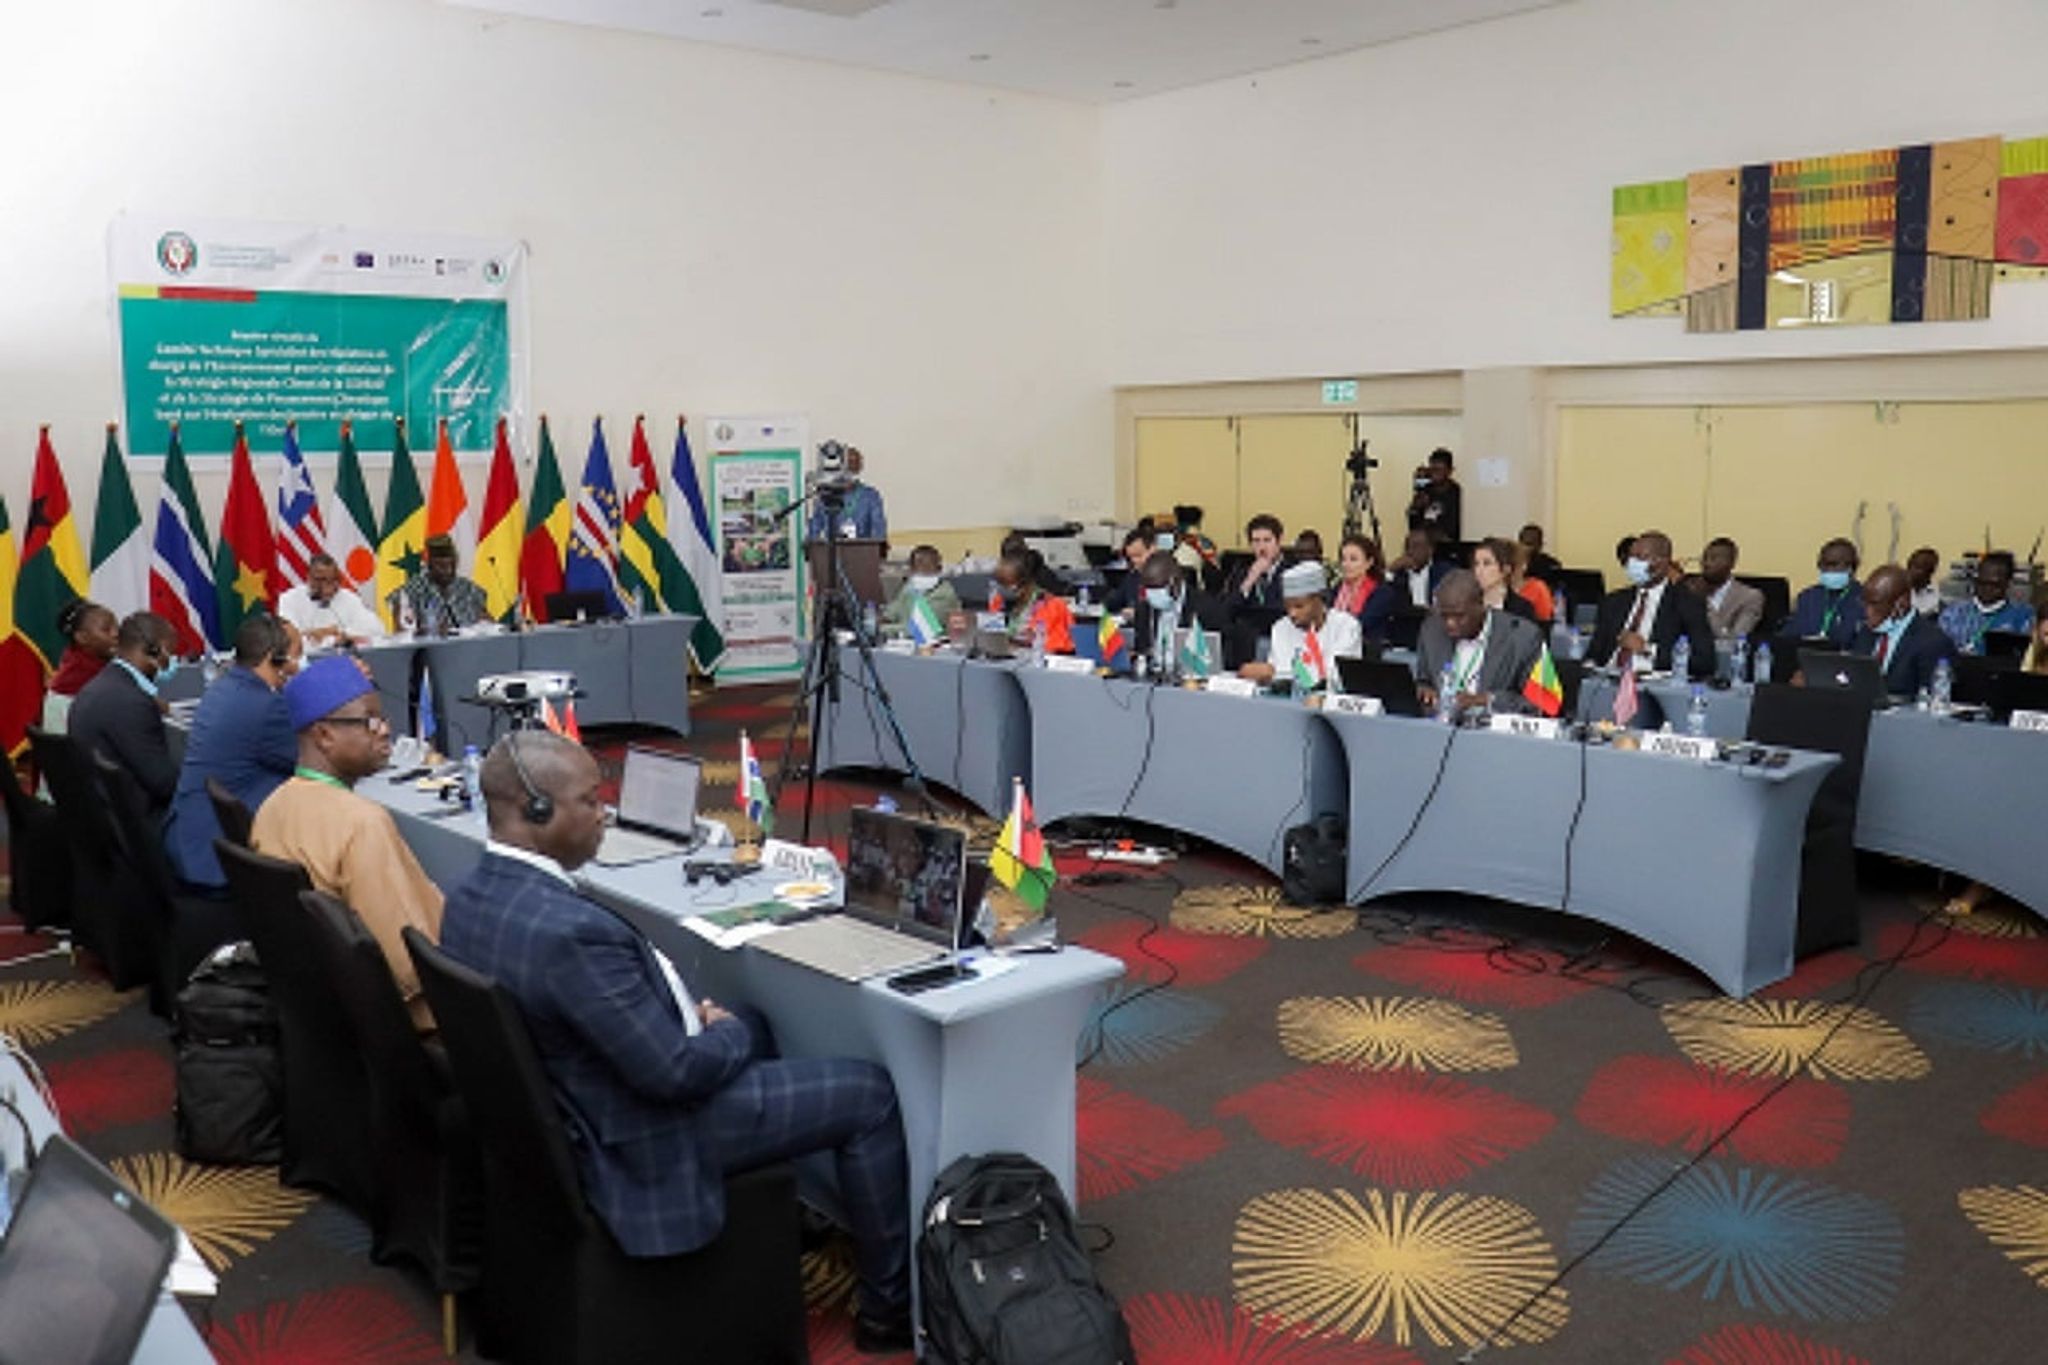 POLYCOPIÉ - Les 15 pays membres de la Communauté économique des États de l'Afrique de l'Ouest (CEDEAO) ont validé la « Stratégie régionale Climat de la CEDEAO » qui se veut un cadre d'action « solidaire et coordonnée » face au changement climatique. Foto: CEDEAO/Photo de presse/dpa